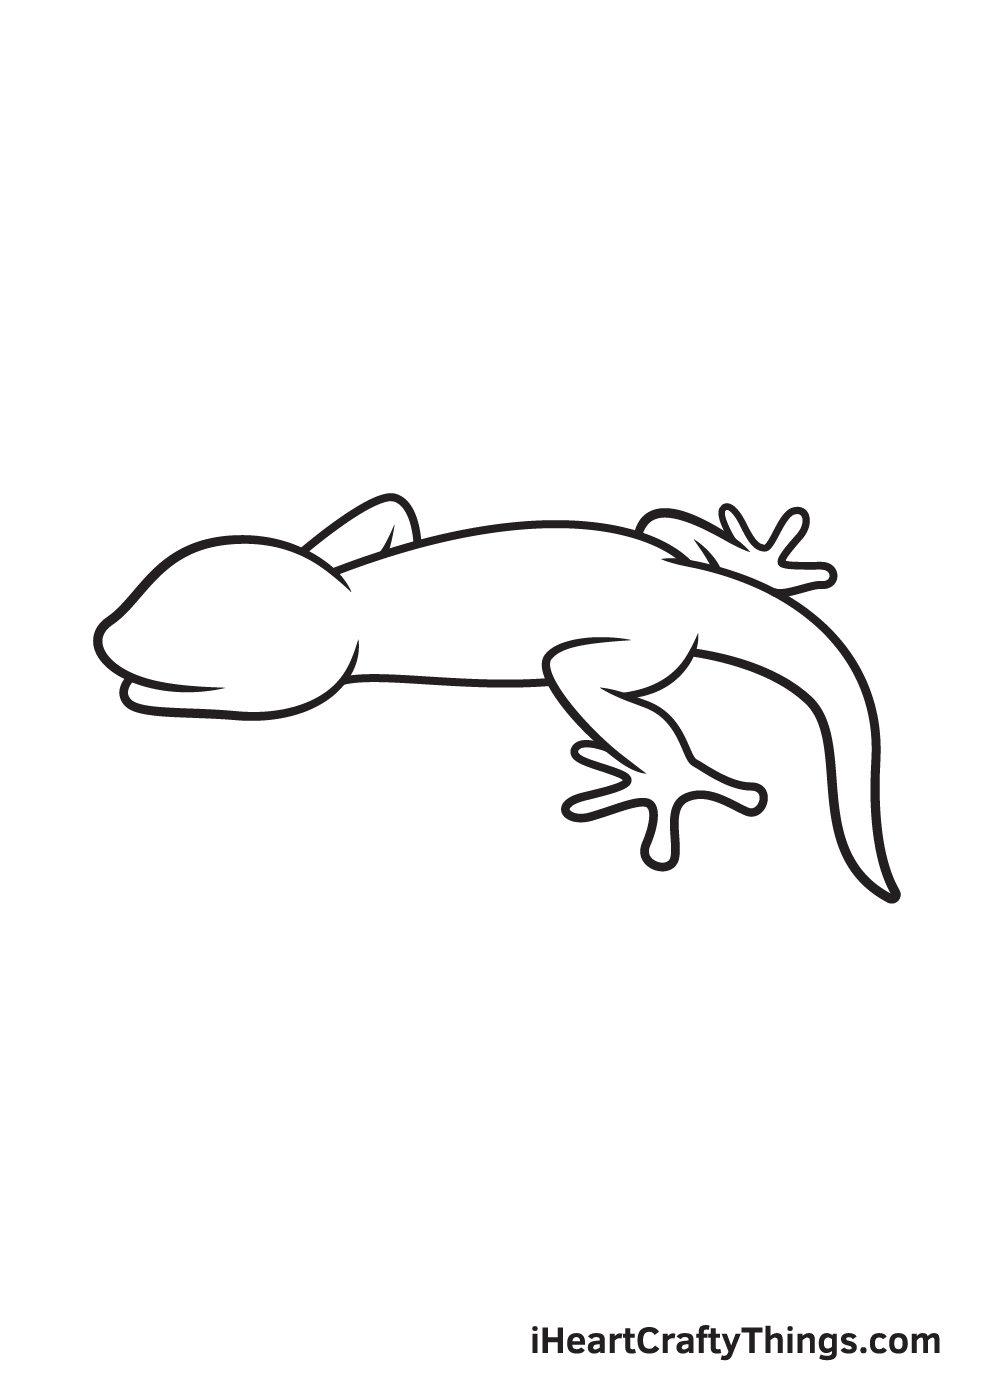 Lizard DRAWING – STEP 7 - Hướng dẫn cách vẽ con thằn lằn đơn giản với 9 bước cơ bản